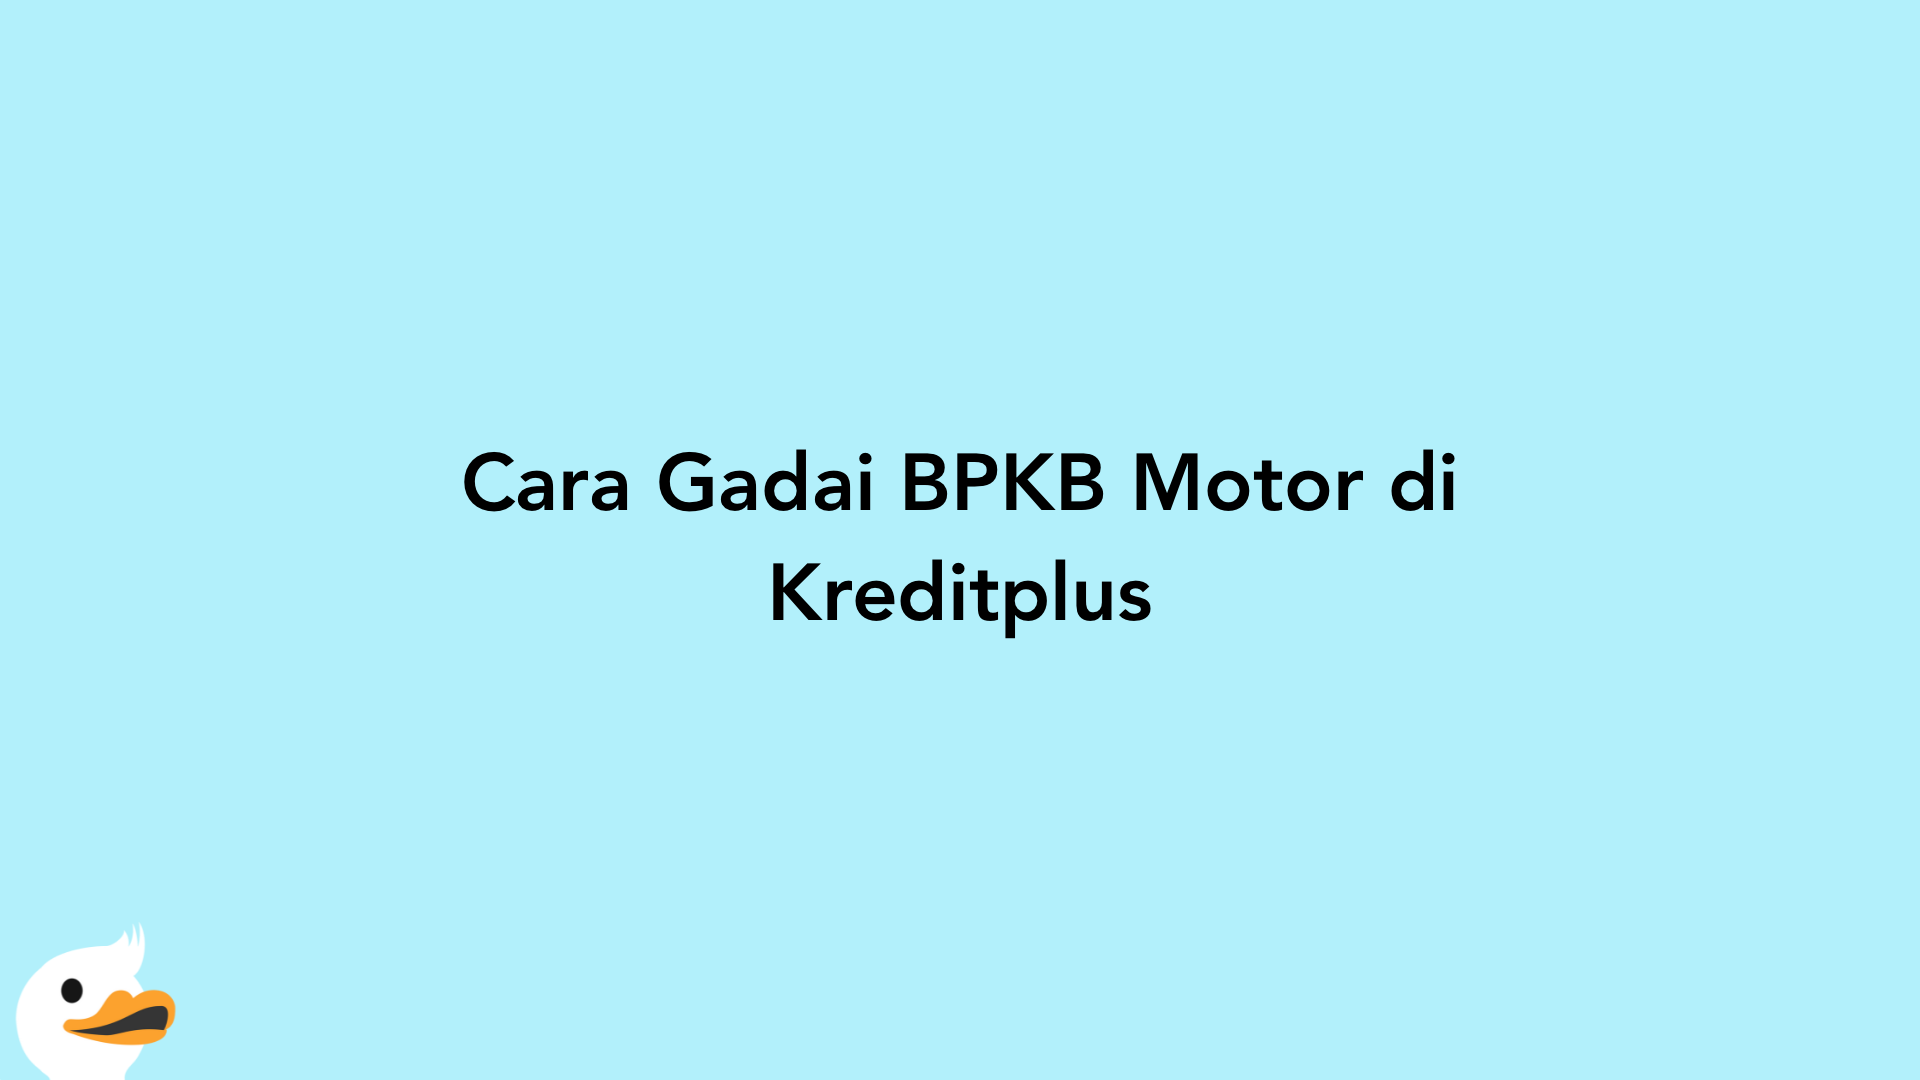 Cara Gadai BPKB Motor di Kreditplus